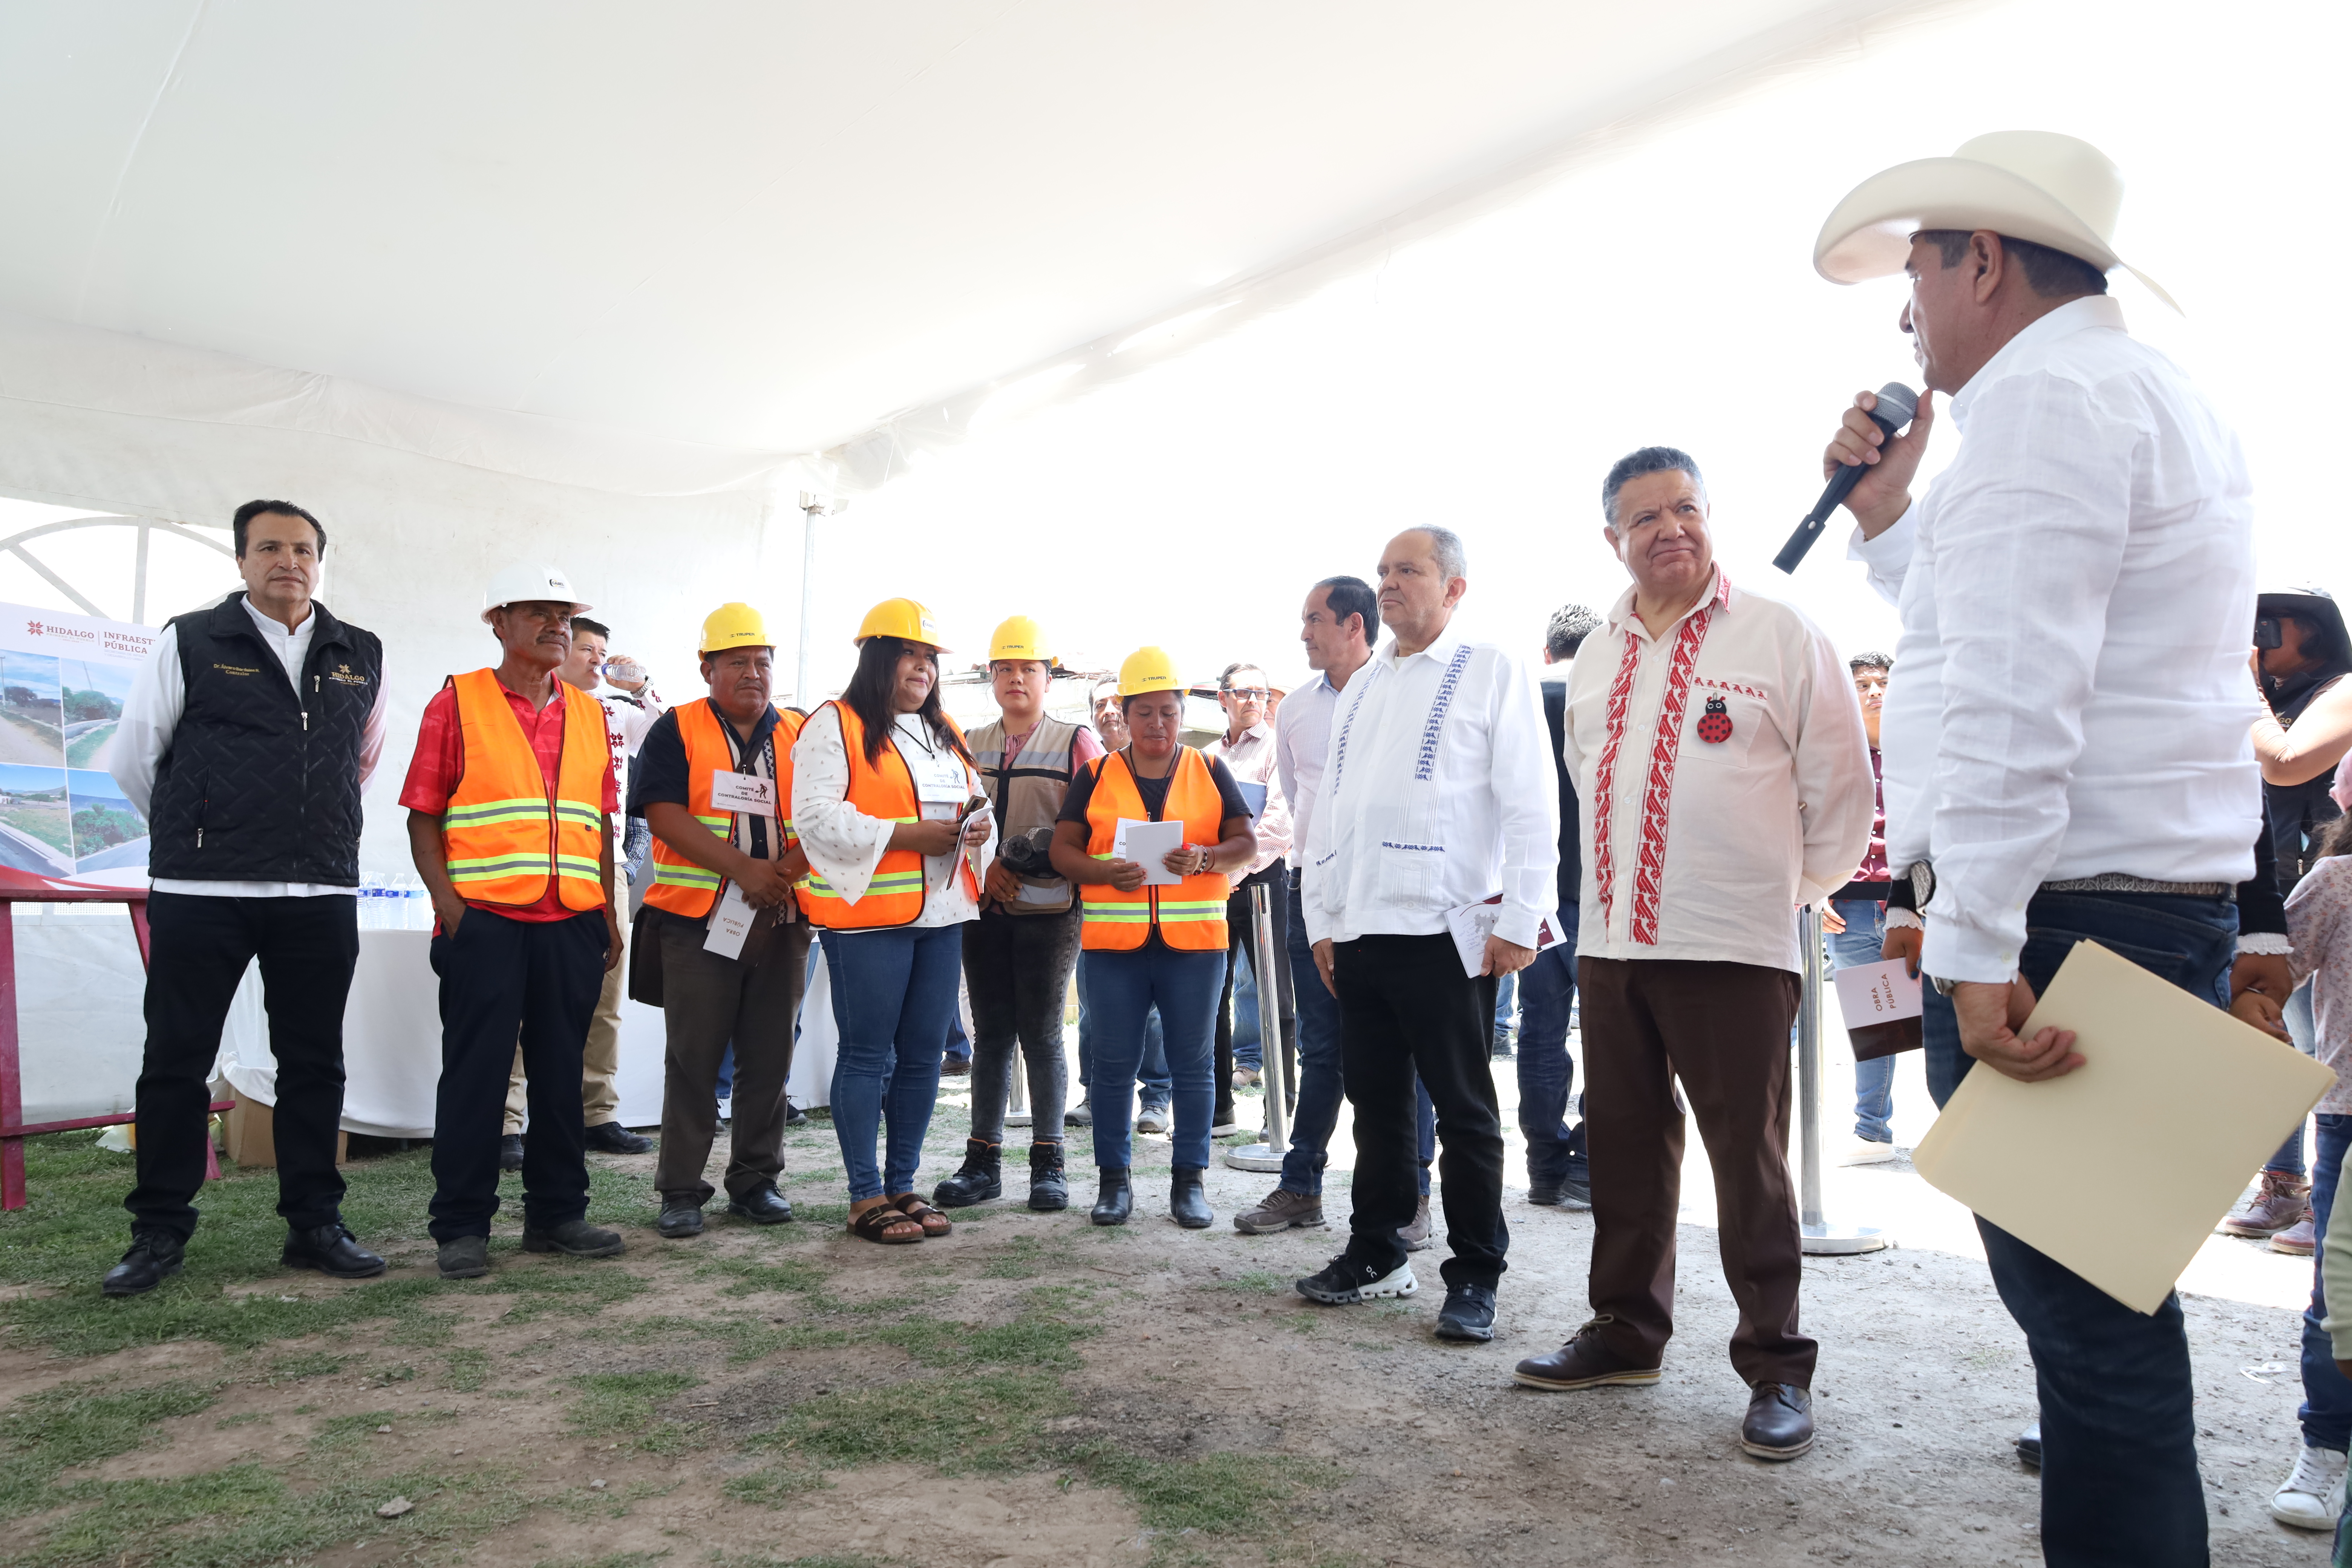 Refrenda Menchaca Salazar compromiso de construir un gobierno cercano al pueblo